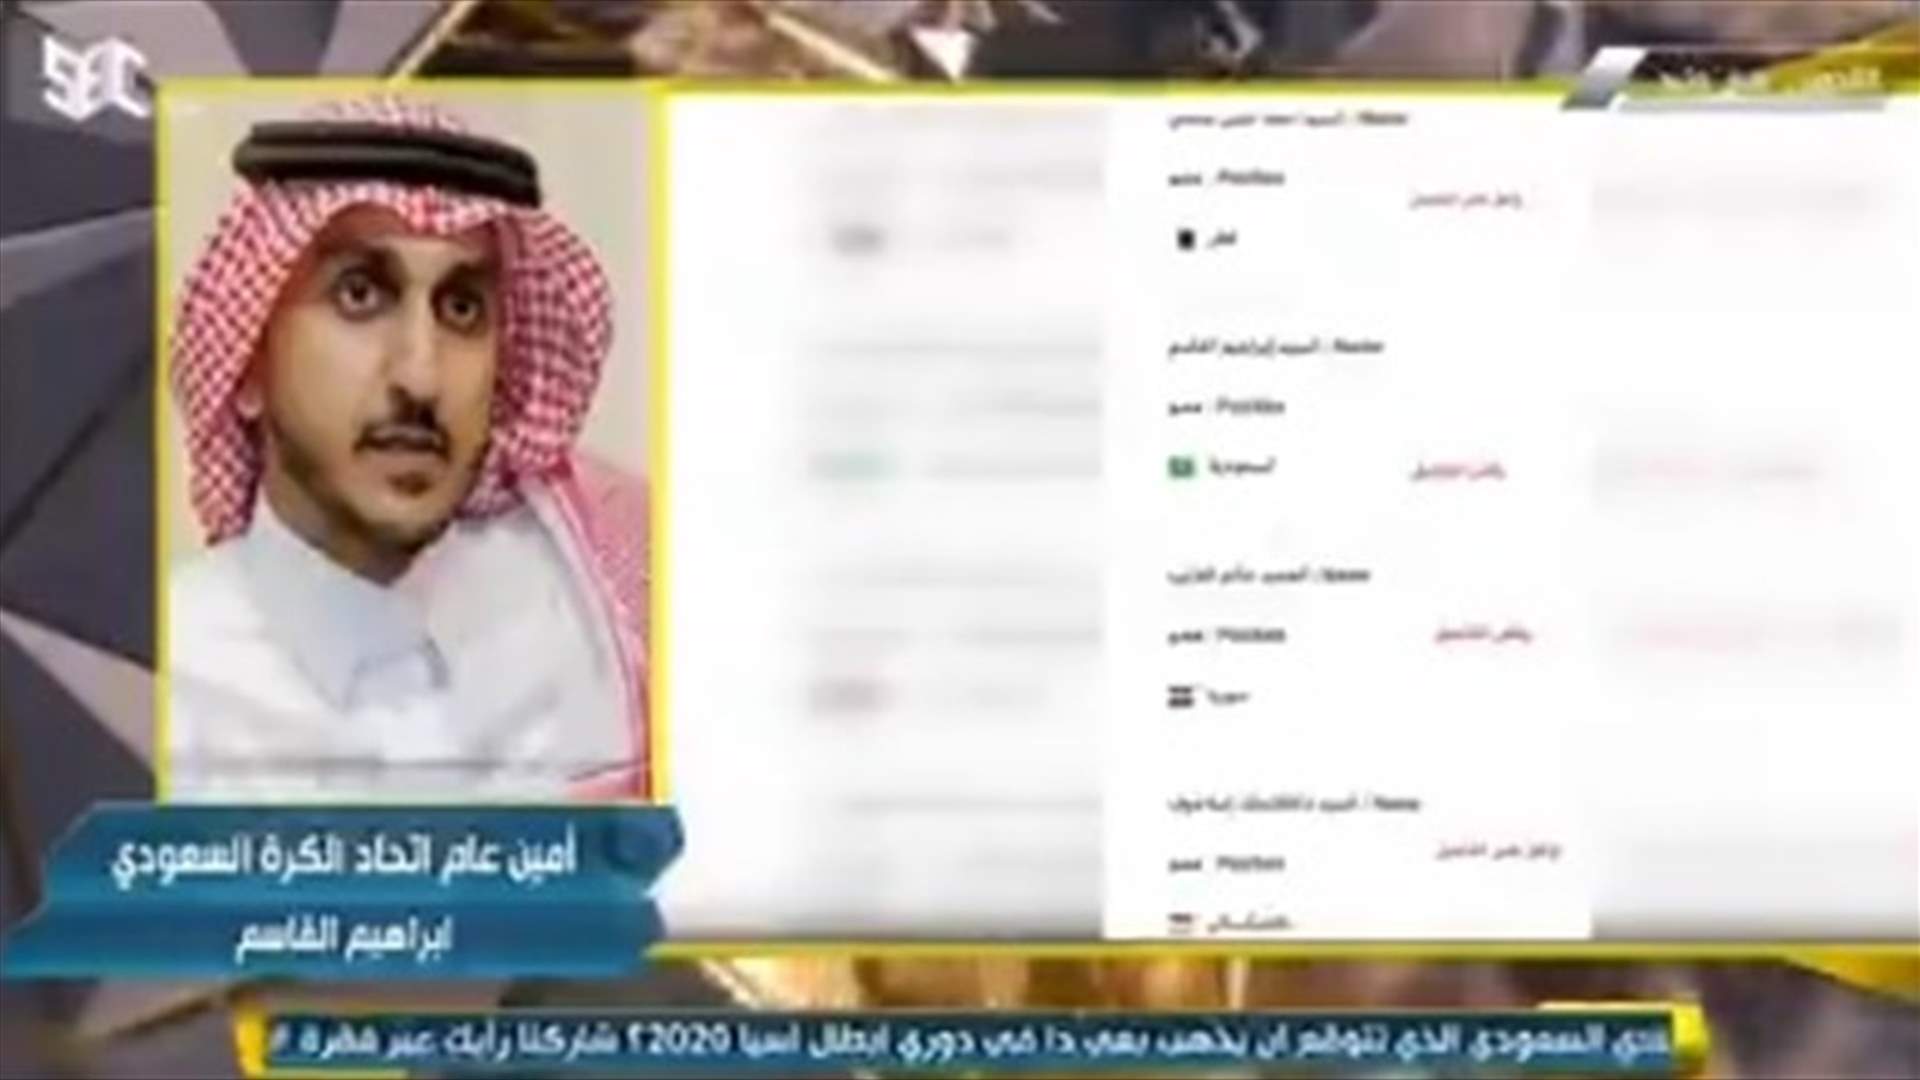 ما صحة تصويت الأمين العام الإتحاد السعودي لكرة القدم إبراهيم القاسم بعدم تأجيل مباراة الهلال ؟ (فيديو)